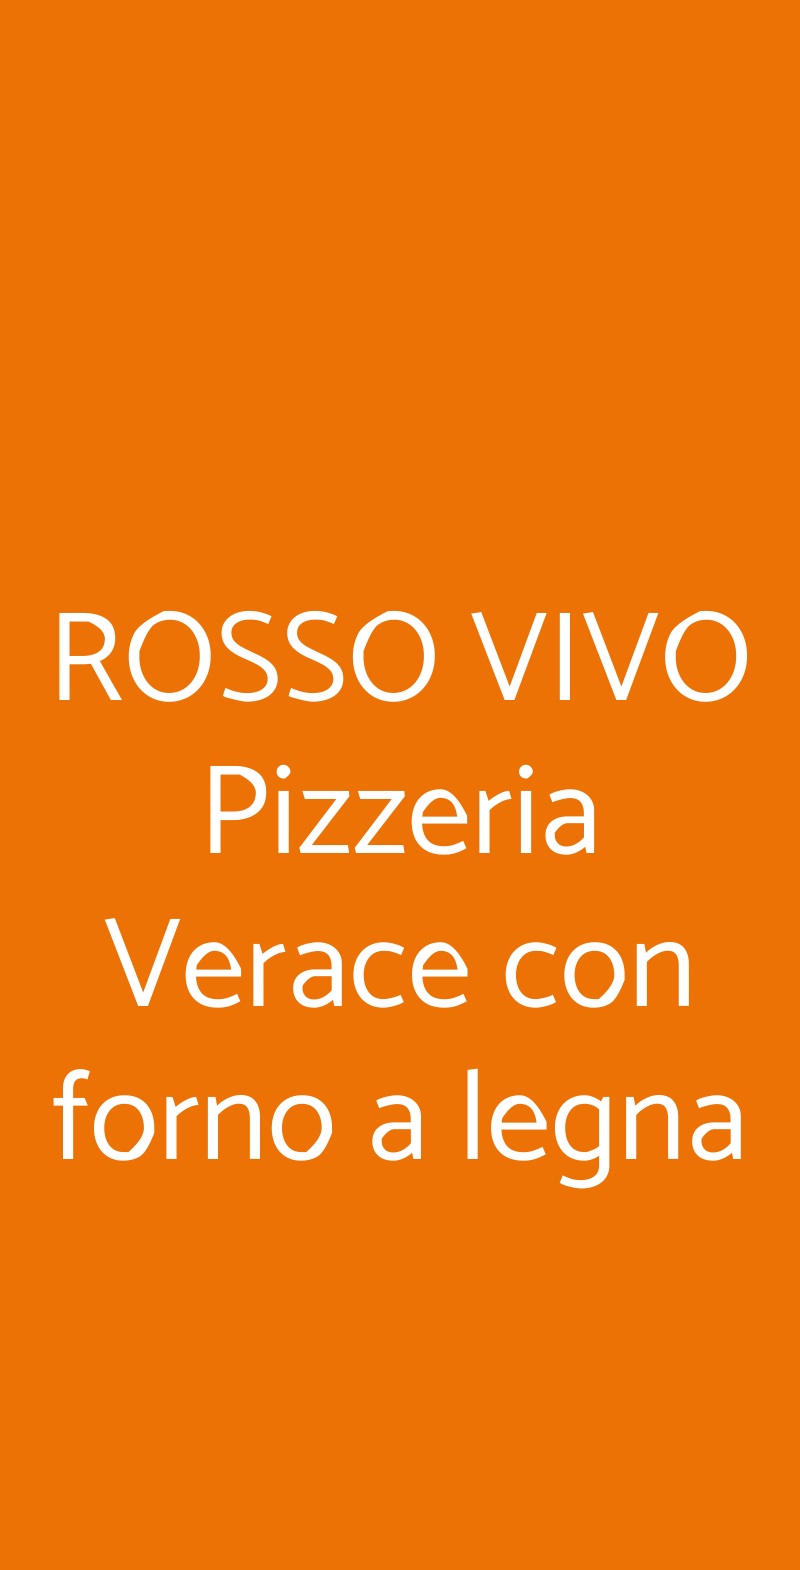 ROSSO VIVO Pizzeria Verace con forno a legna Chianciano Terme menù 1 pagina